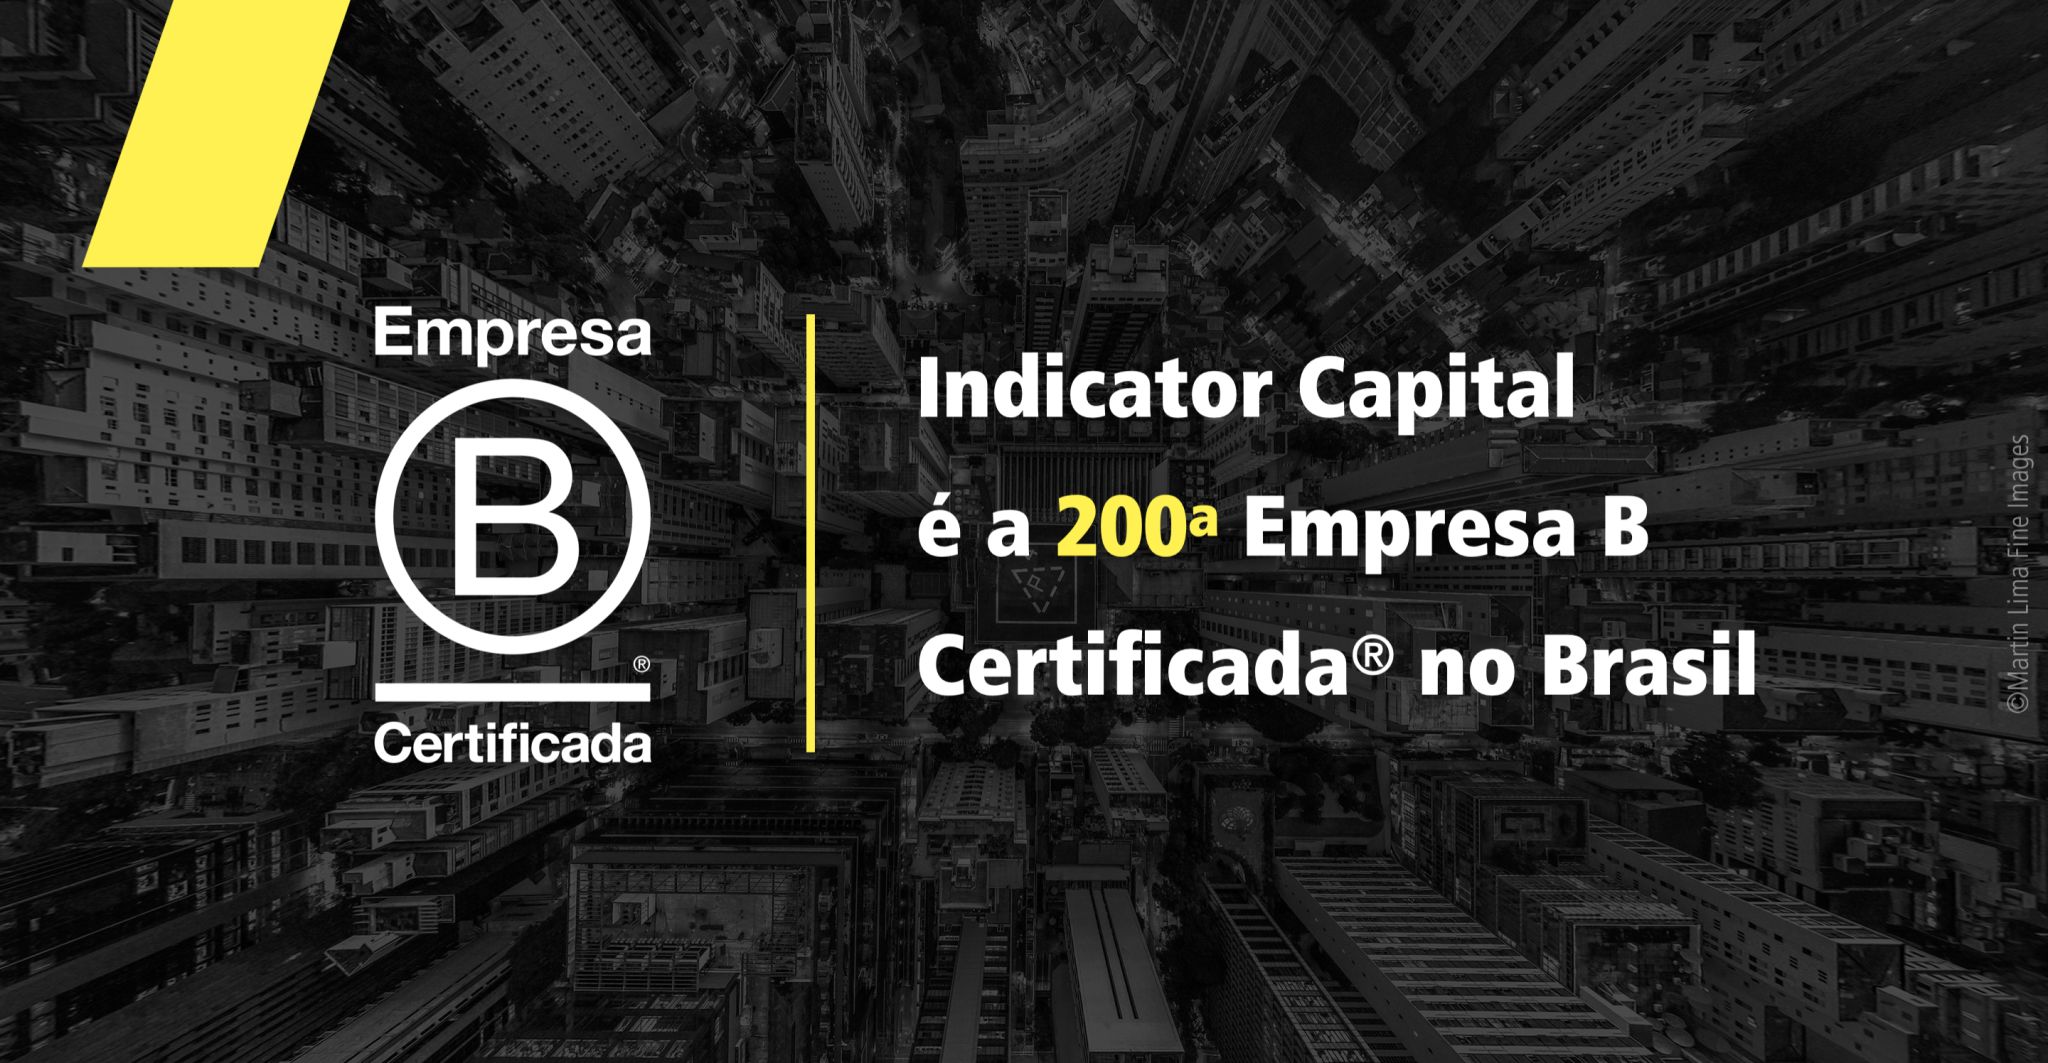 Indicator Capital obteve a certificação do Sistema B